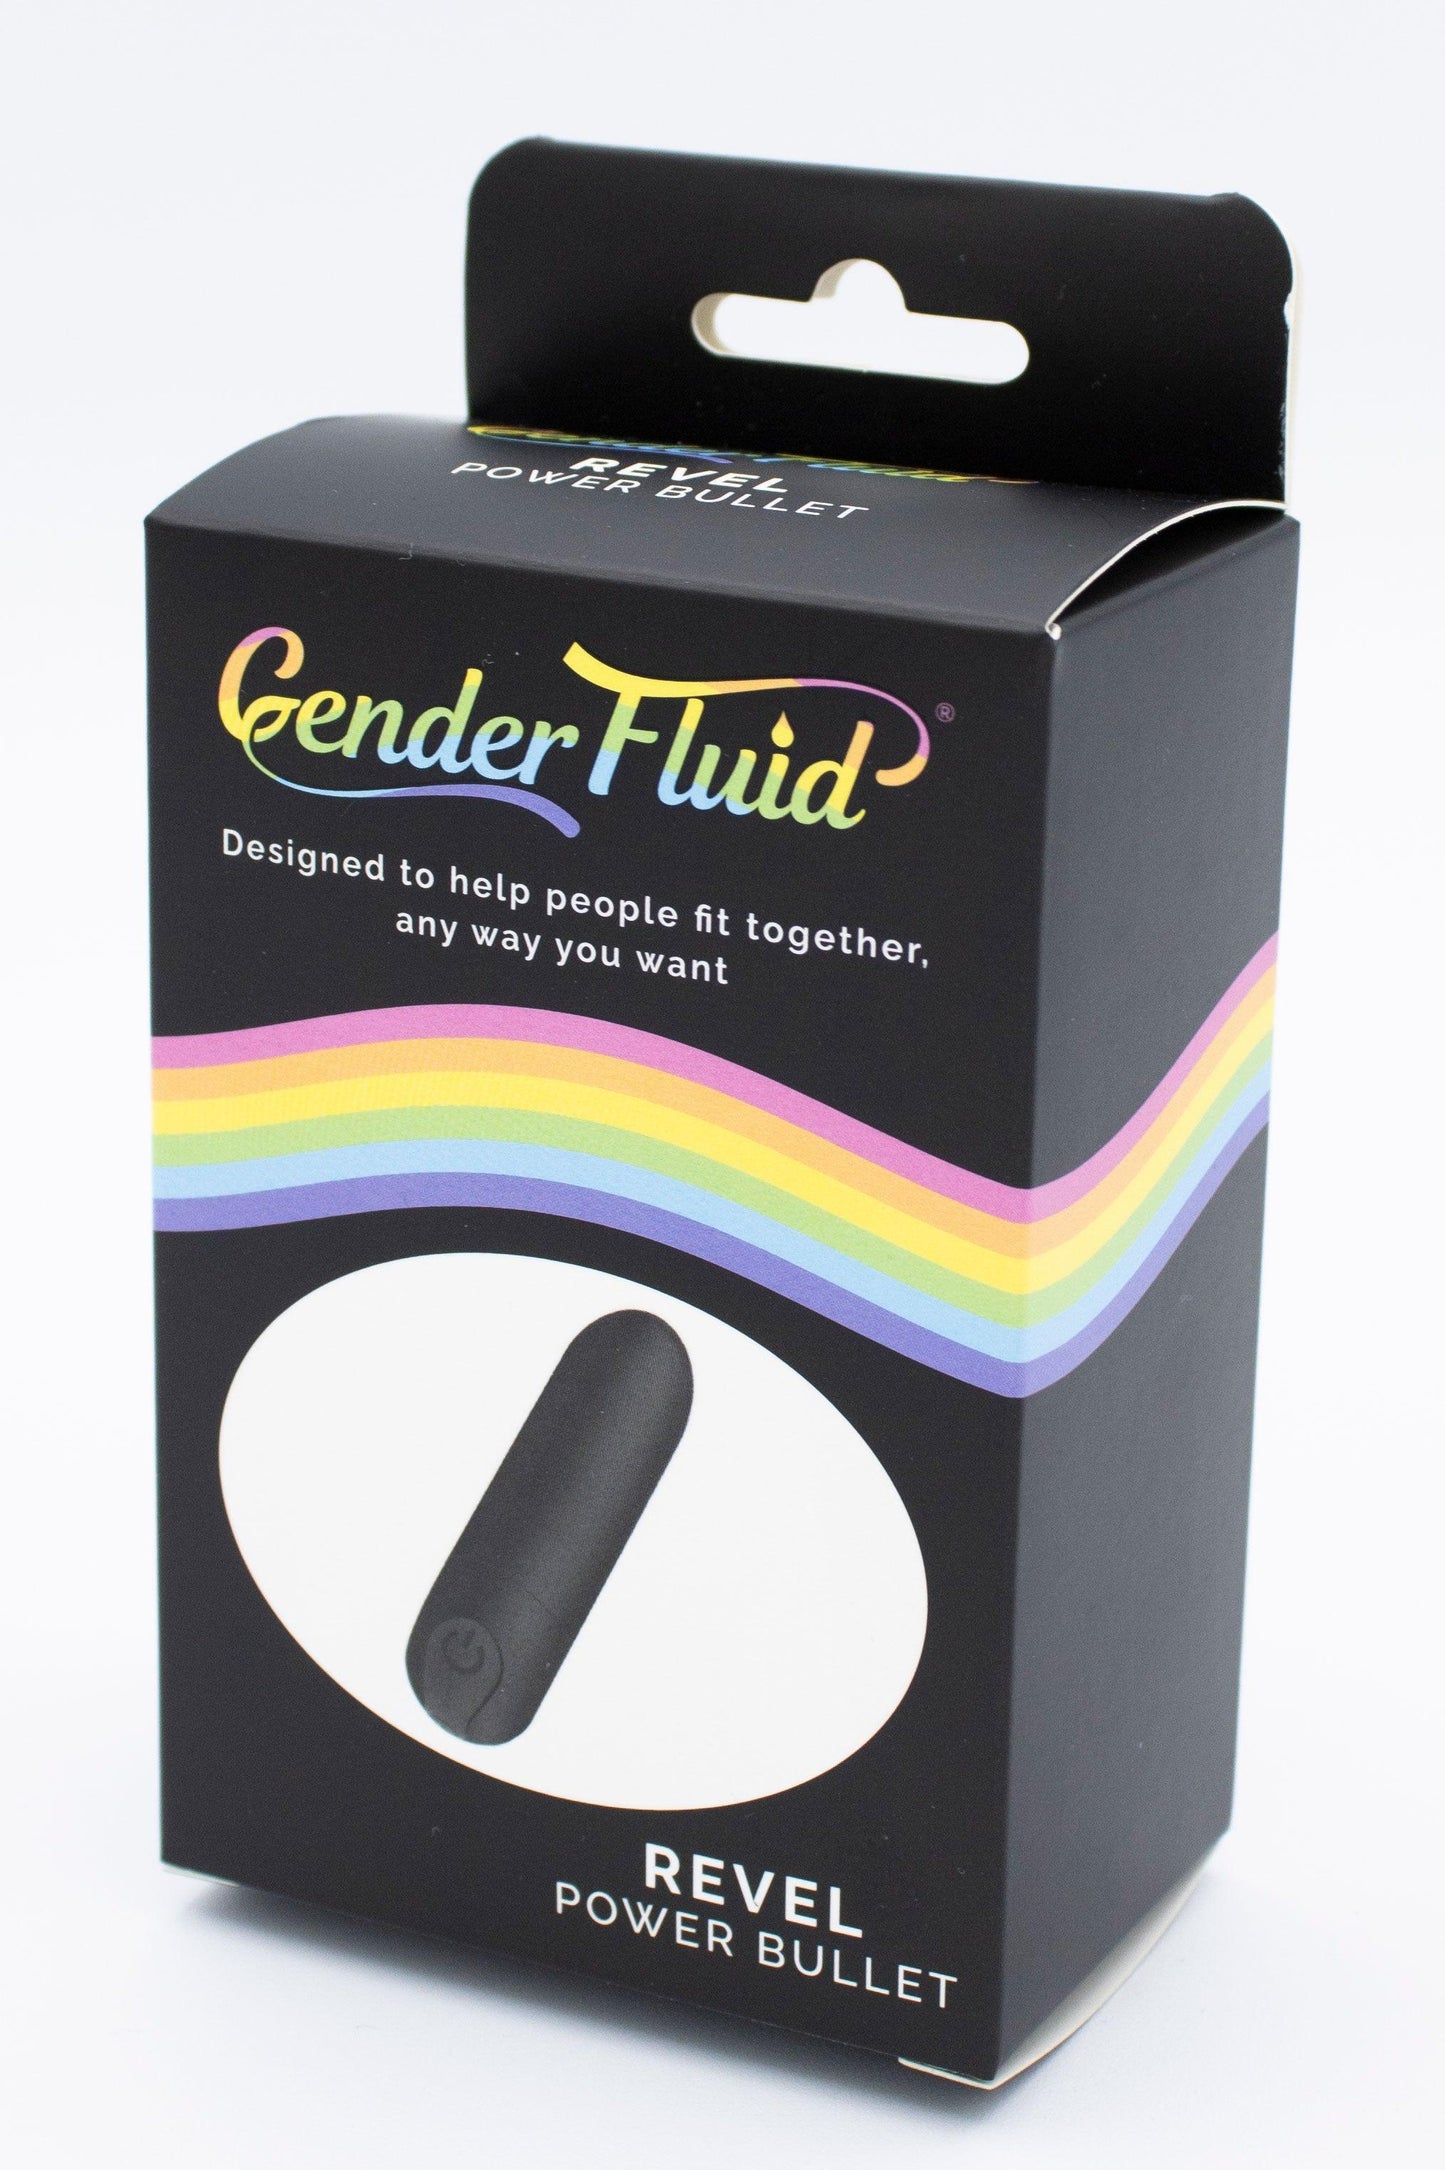 Gender Fluid Revel Power Bullet - Matte Black - My Sex Toy Hub